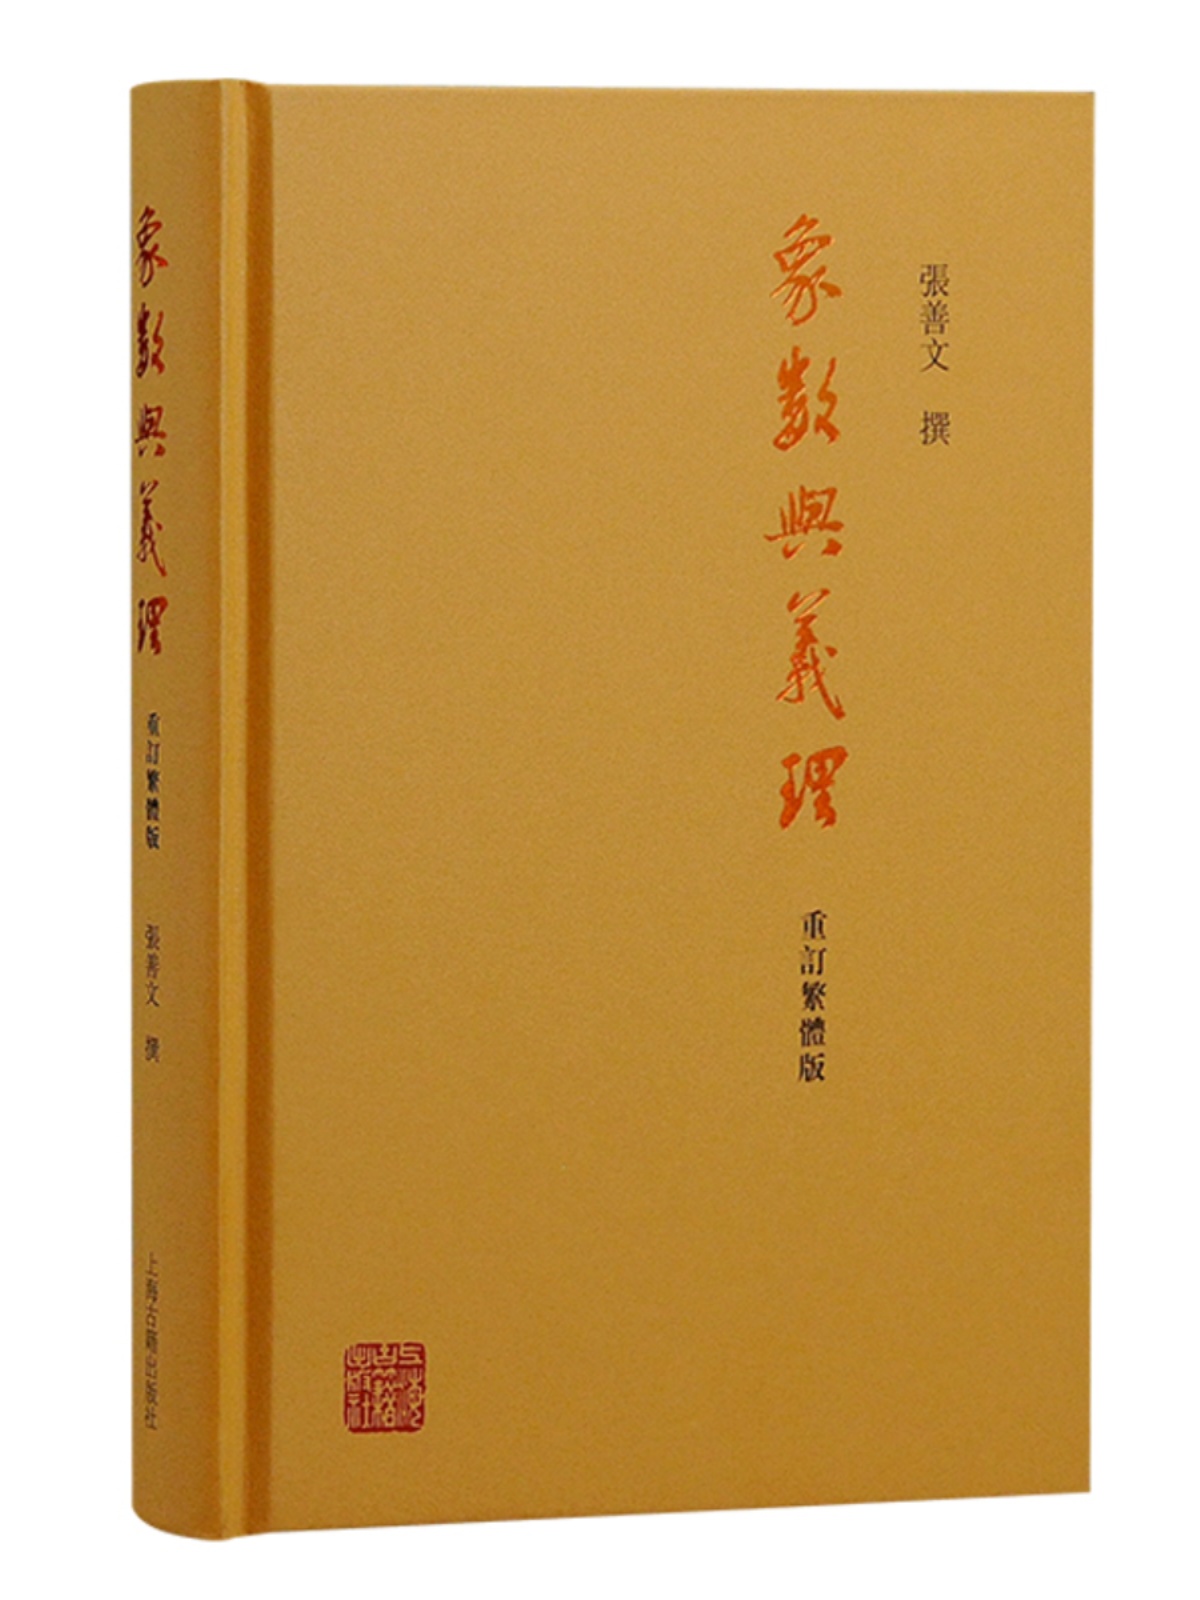 y象数与义理 重订繁体版周易经典著作正版图书籍上海古籍出版社中国哲学D